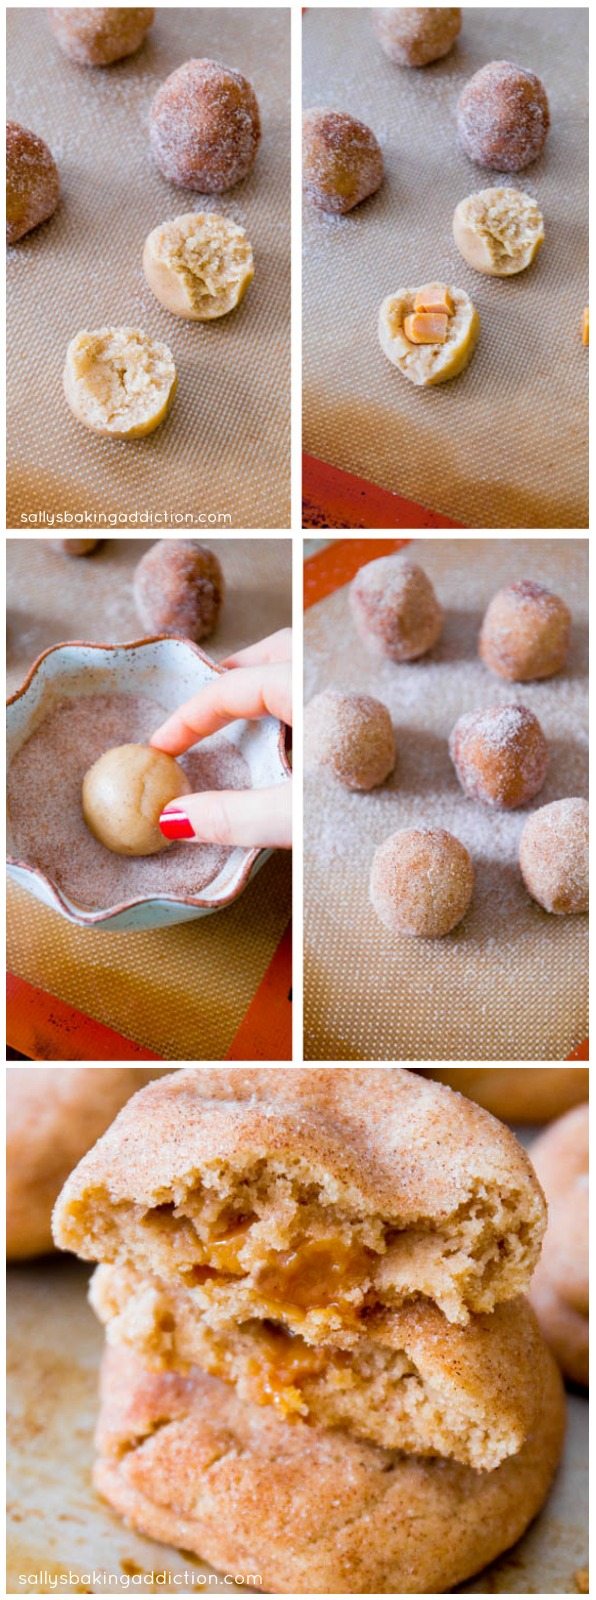 Comment faire des biscuits Snickerdoodle farcis au caramel! Recette sur sallysbakingaddiction.com